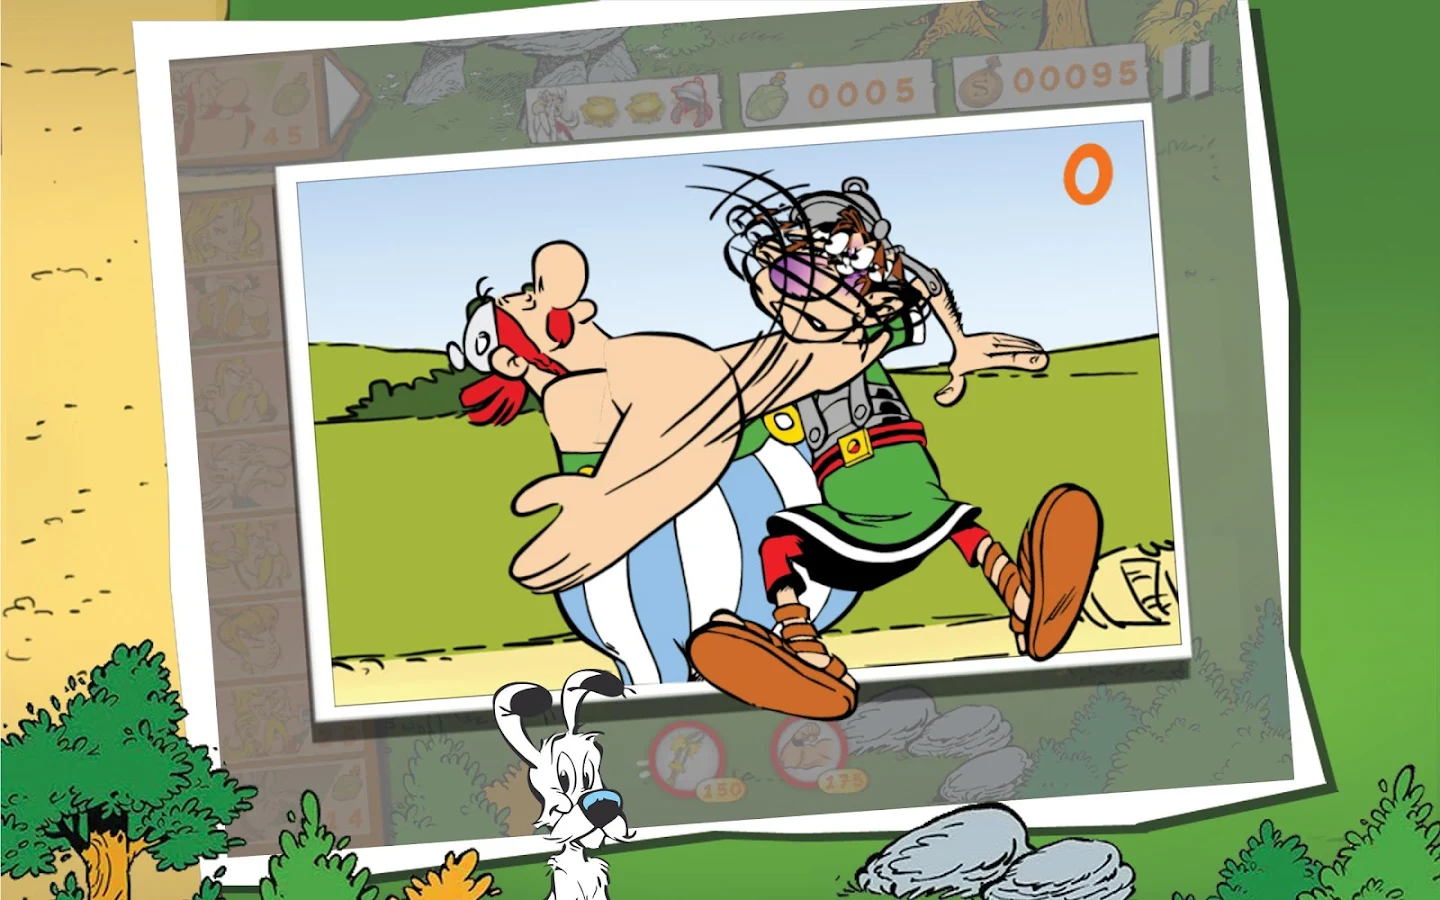 Asterix: Total Retaliation - screenshot